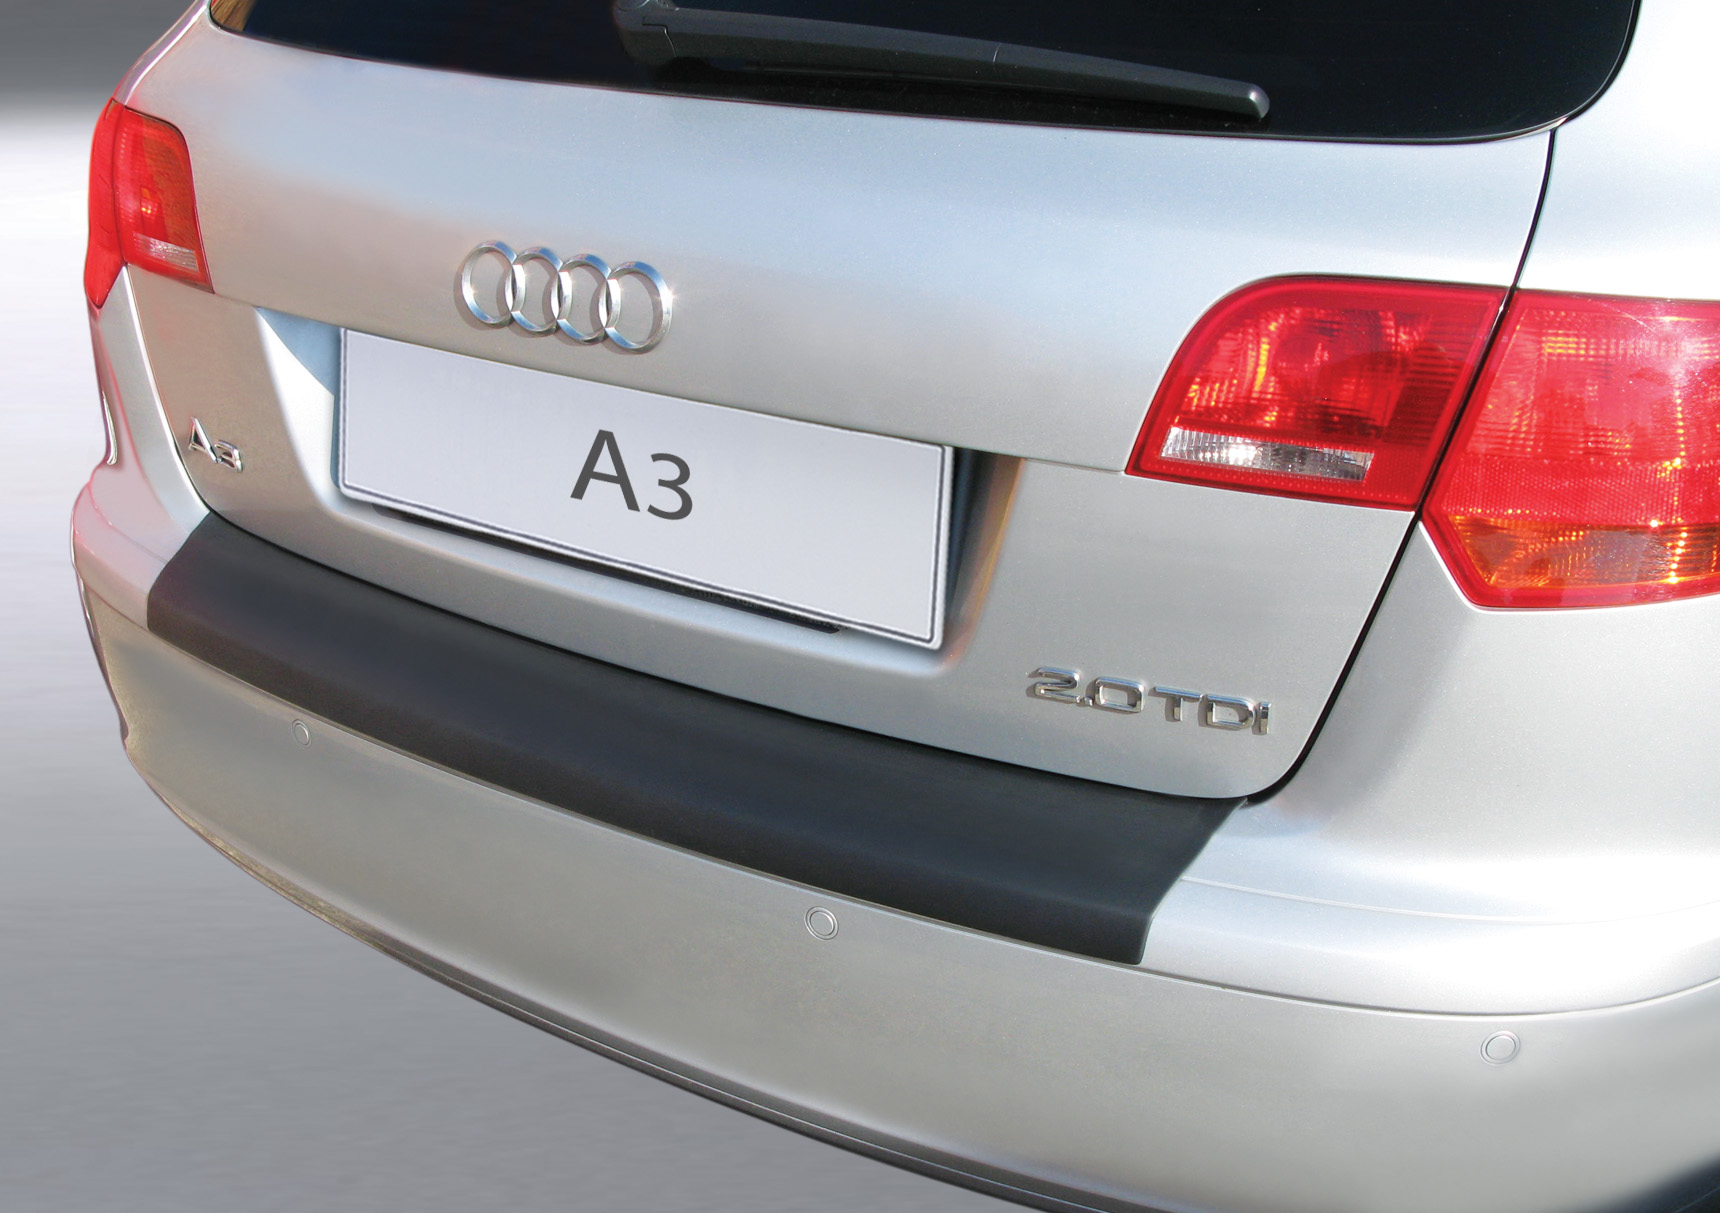 Ladekantenschutz mit Abkantung passend für Audi A3 Sportback 8PA (vor  Facelift) ab BJ. 08.2004 bis 05.2008 (nicht für S3) ABS Farbe schwarz |  Aroba